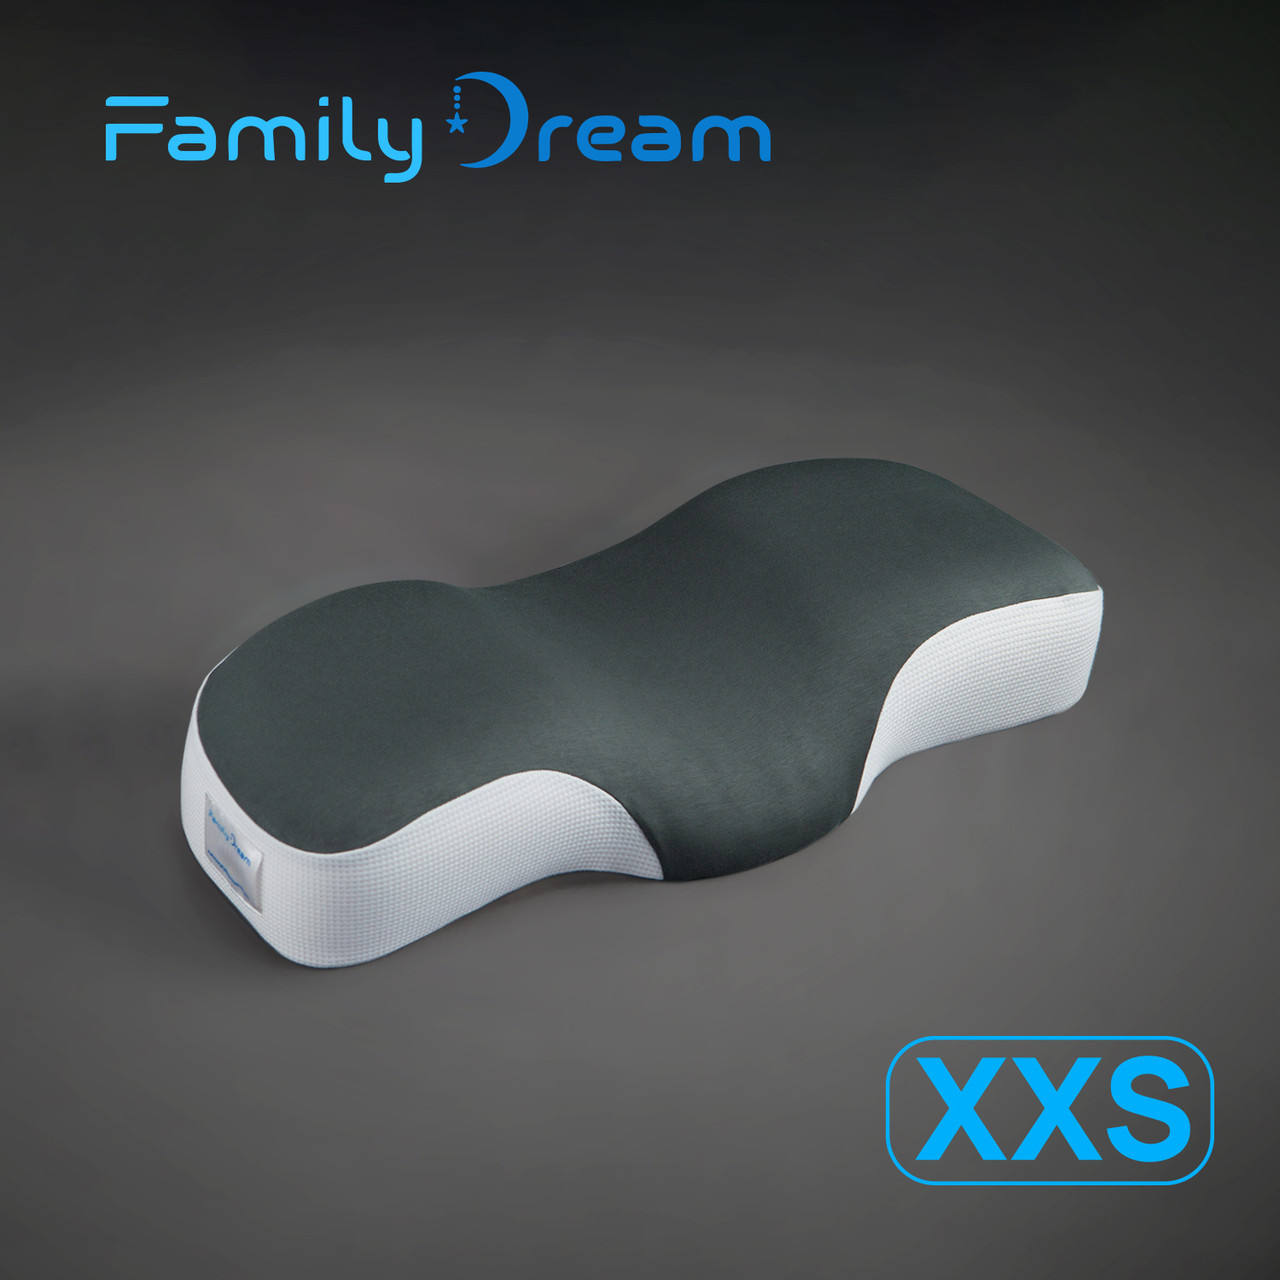 Дитяча ортопедична подушка Family Dream XXS (зріст 110 -125 см) Вік 4 - 7 років